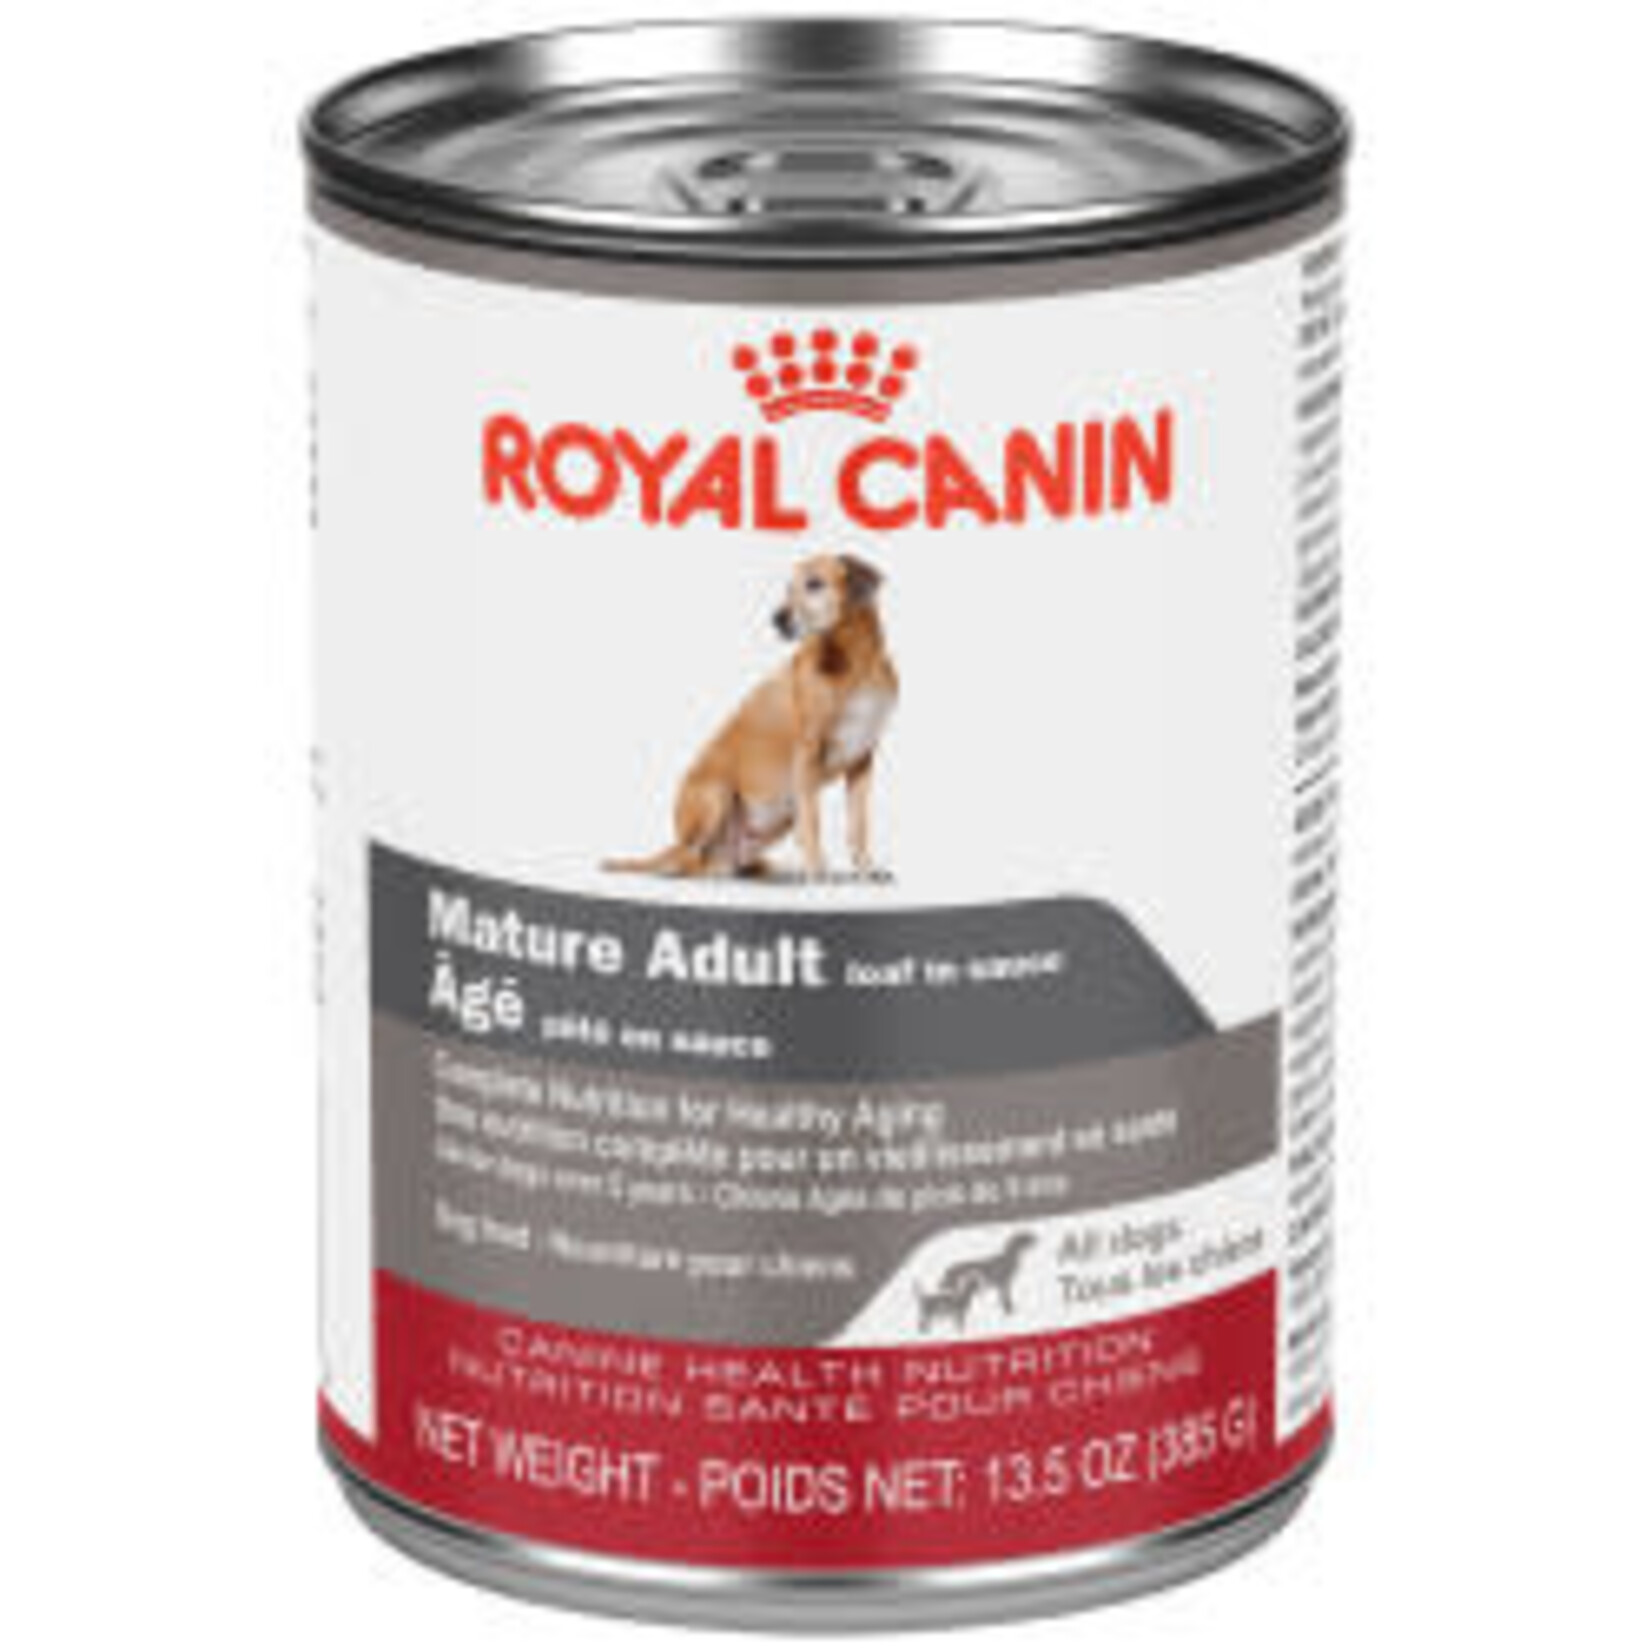 Royal Canin Royal Canin Pâté Toutes Races Adulte Âgé 13.5 OZ/385 G